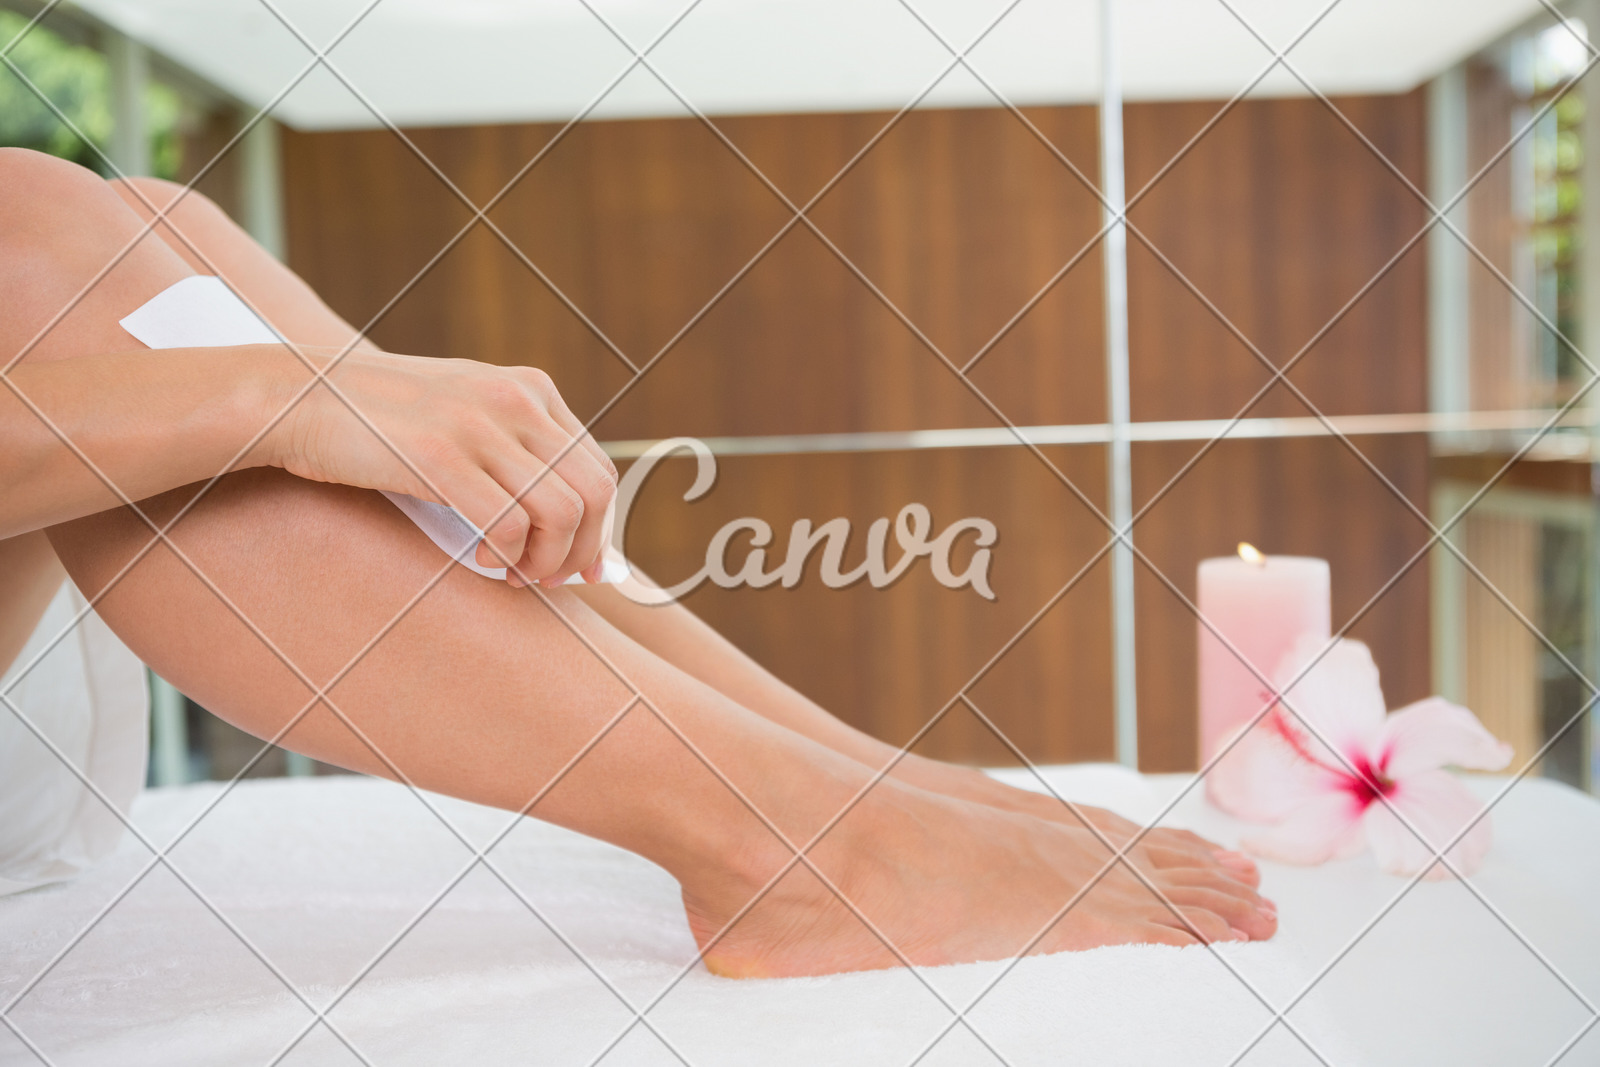 美容院室内腿关爱蜡生活方式spa美容华贵健康保健休闲活动